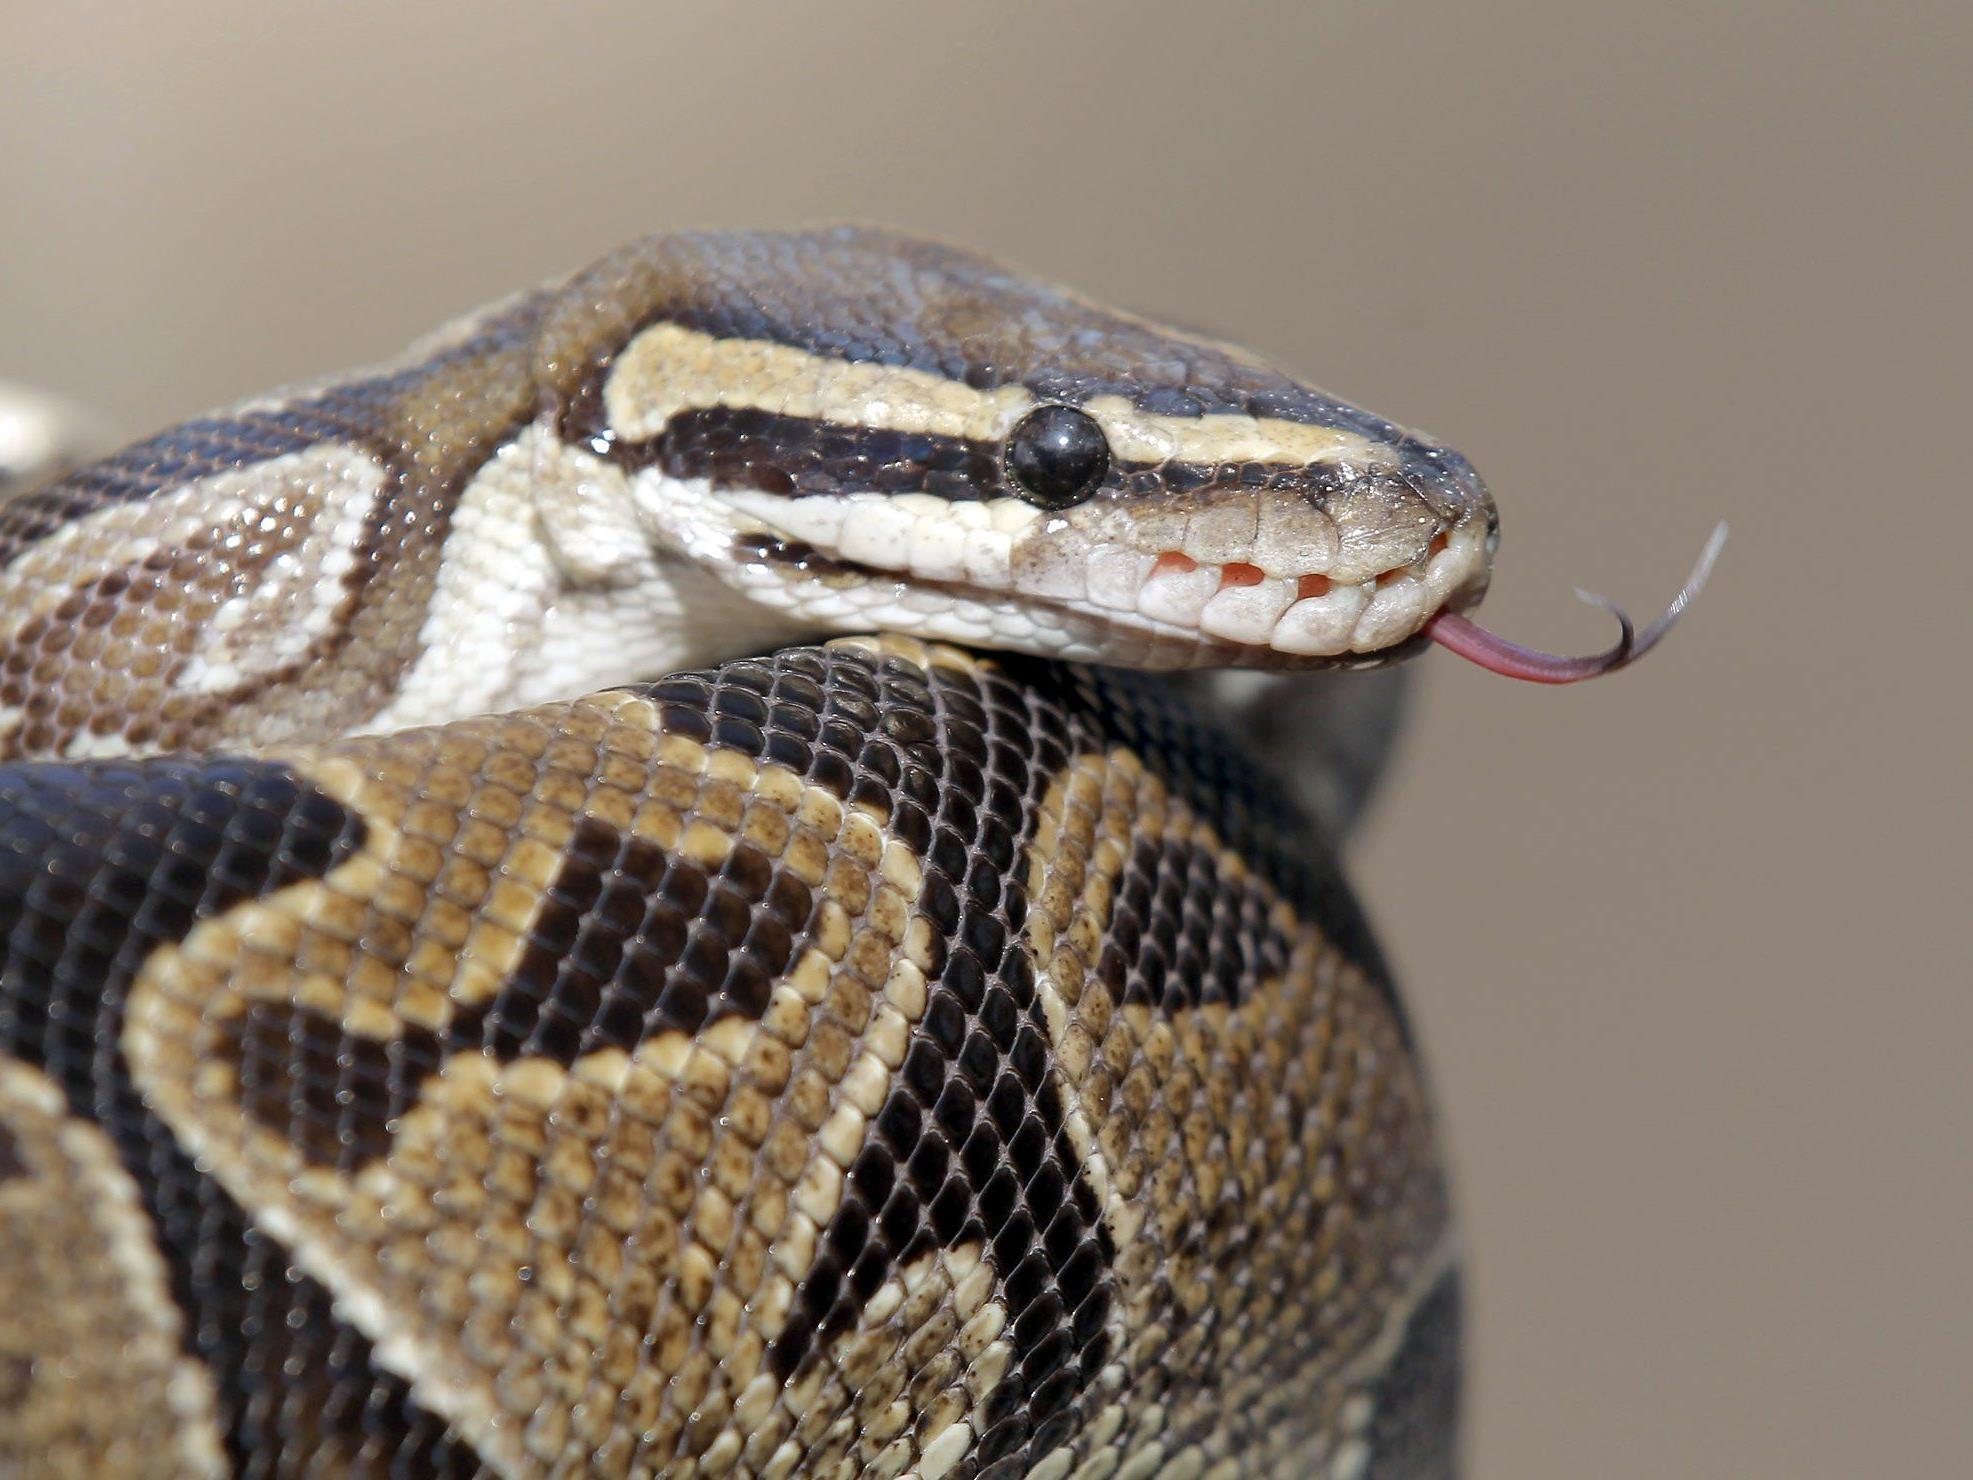 Ein Python griff in Australien einen Foxterrier an.